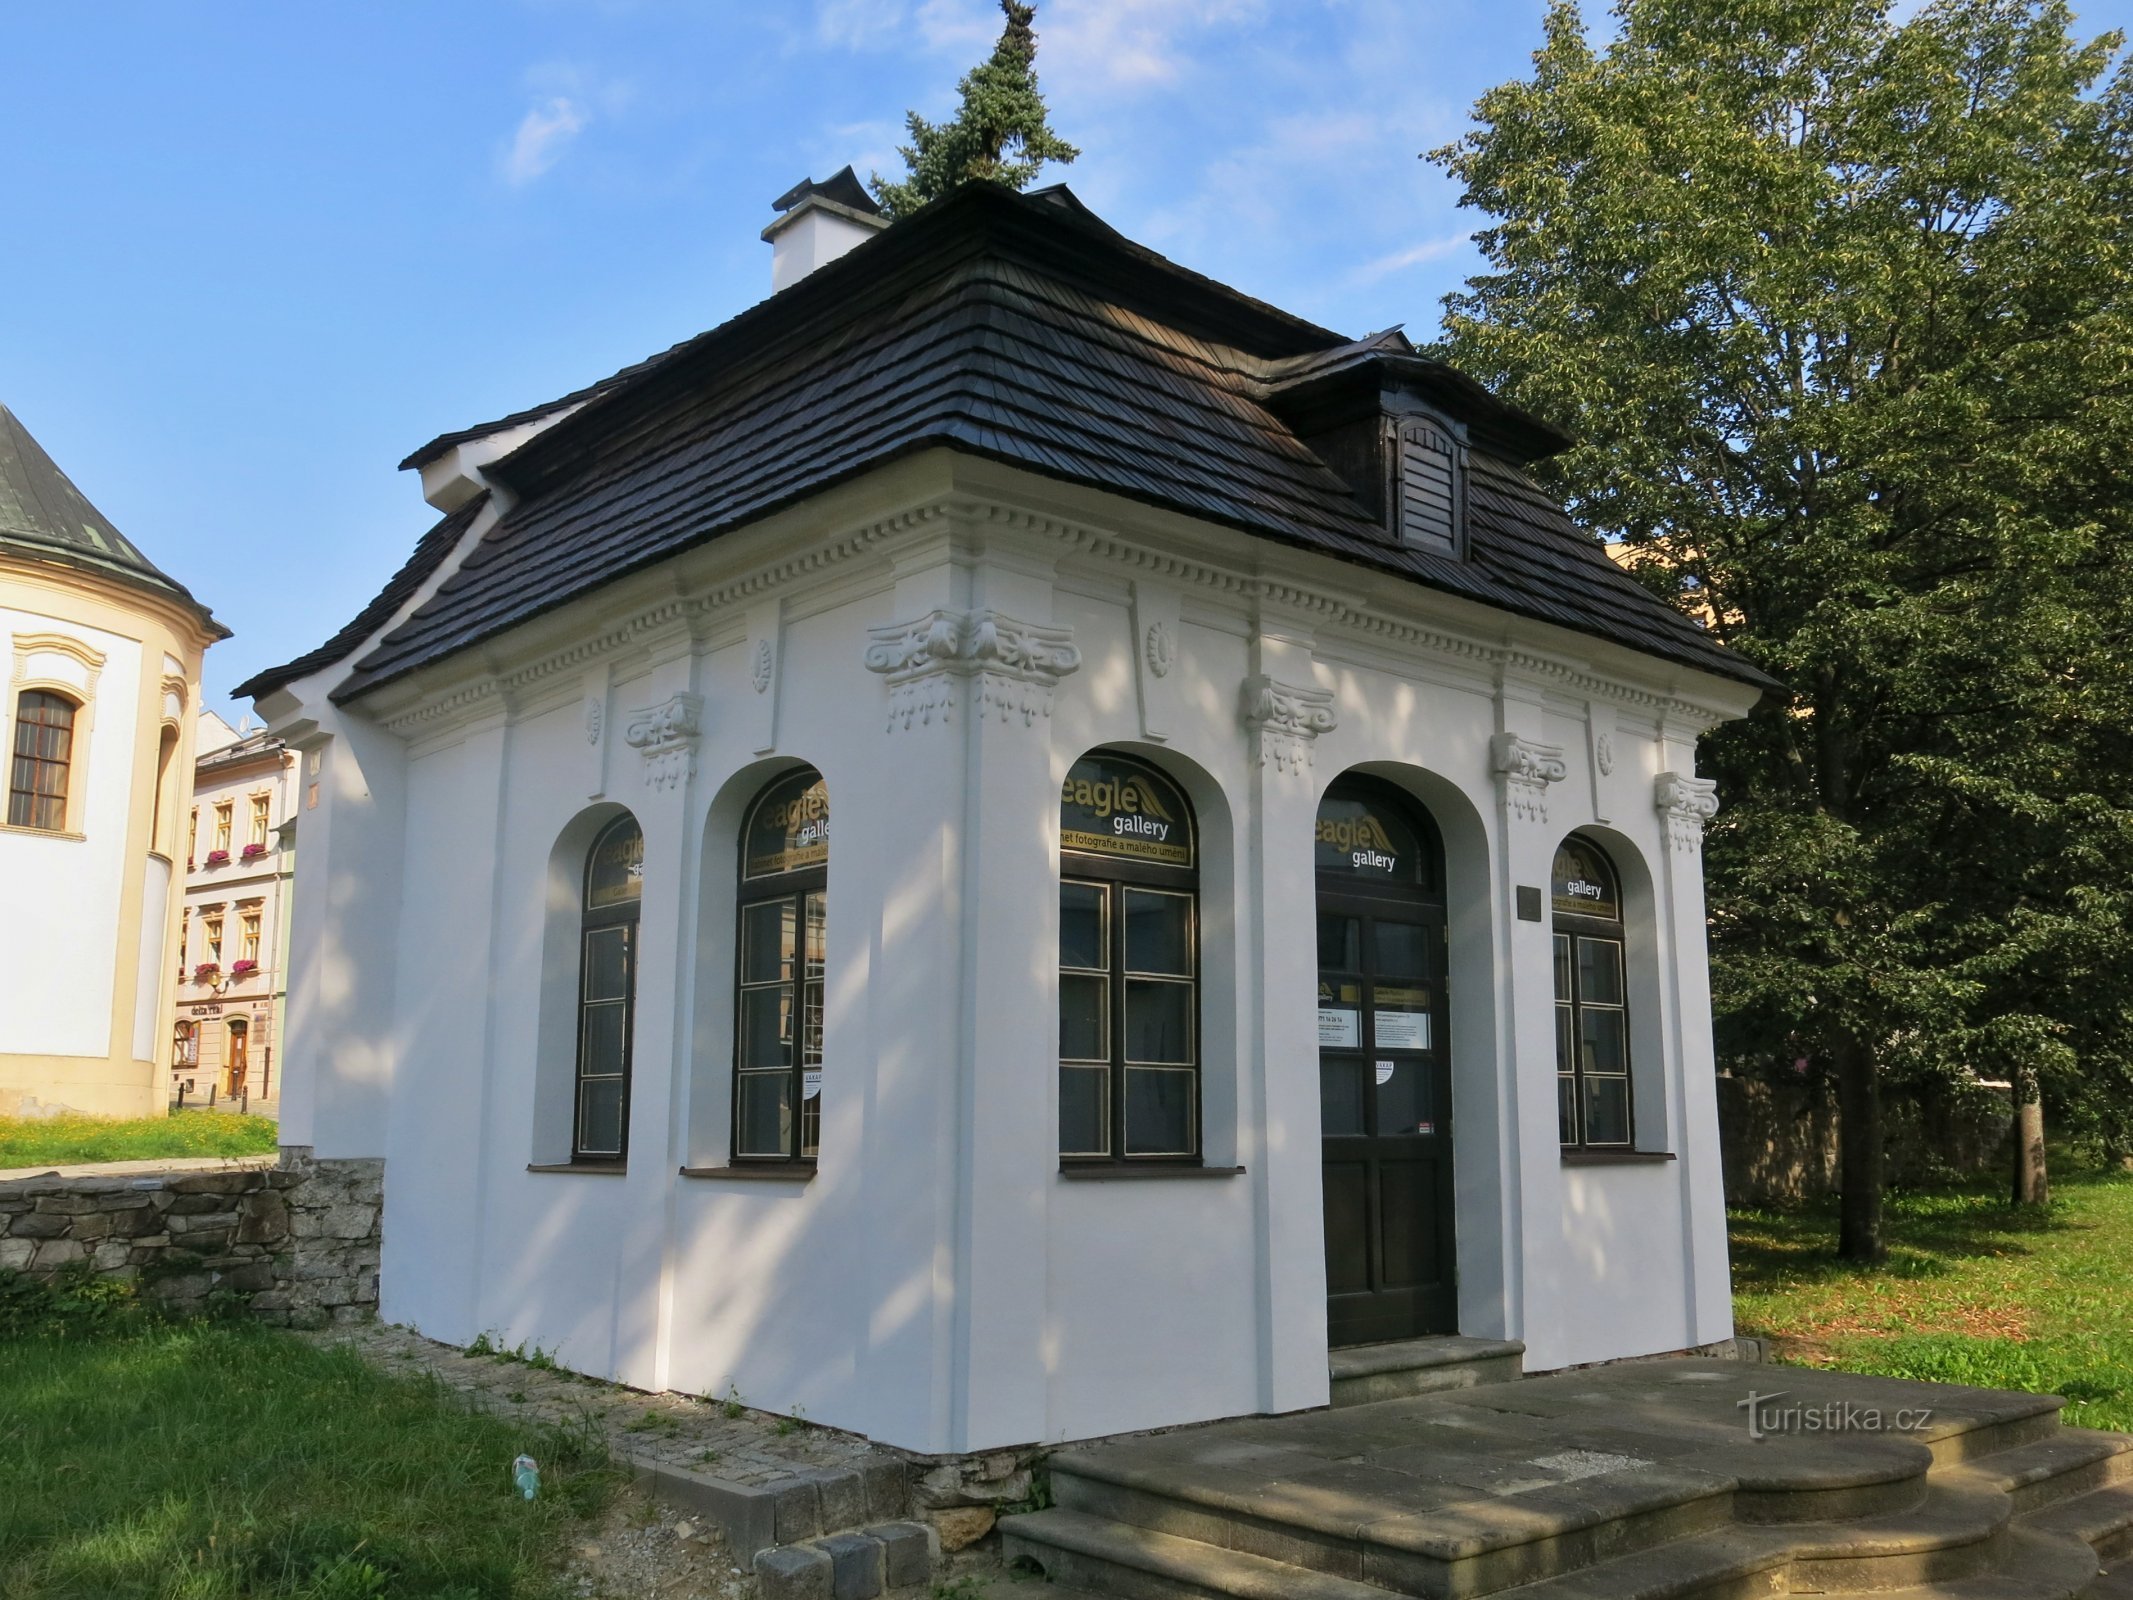 Šumperk – Galerie Pavilon, de eerste zelfbedieningsgalerie in Tsjechië